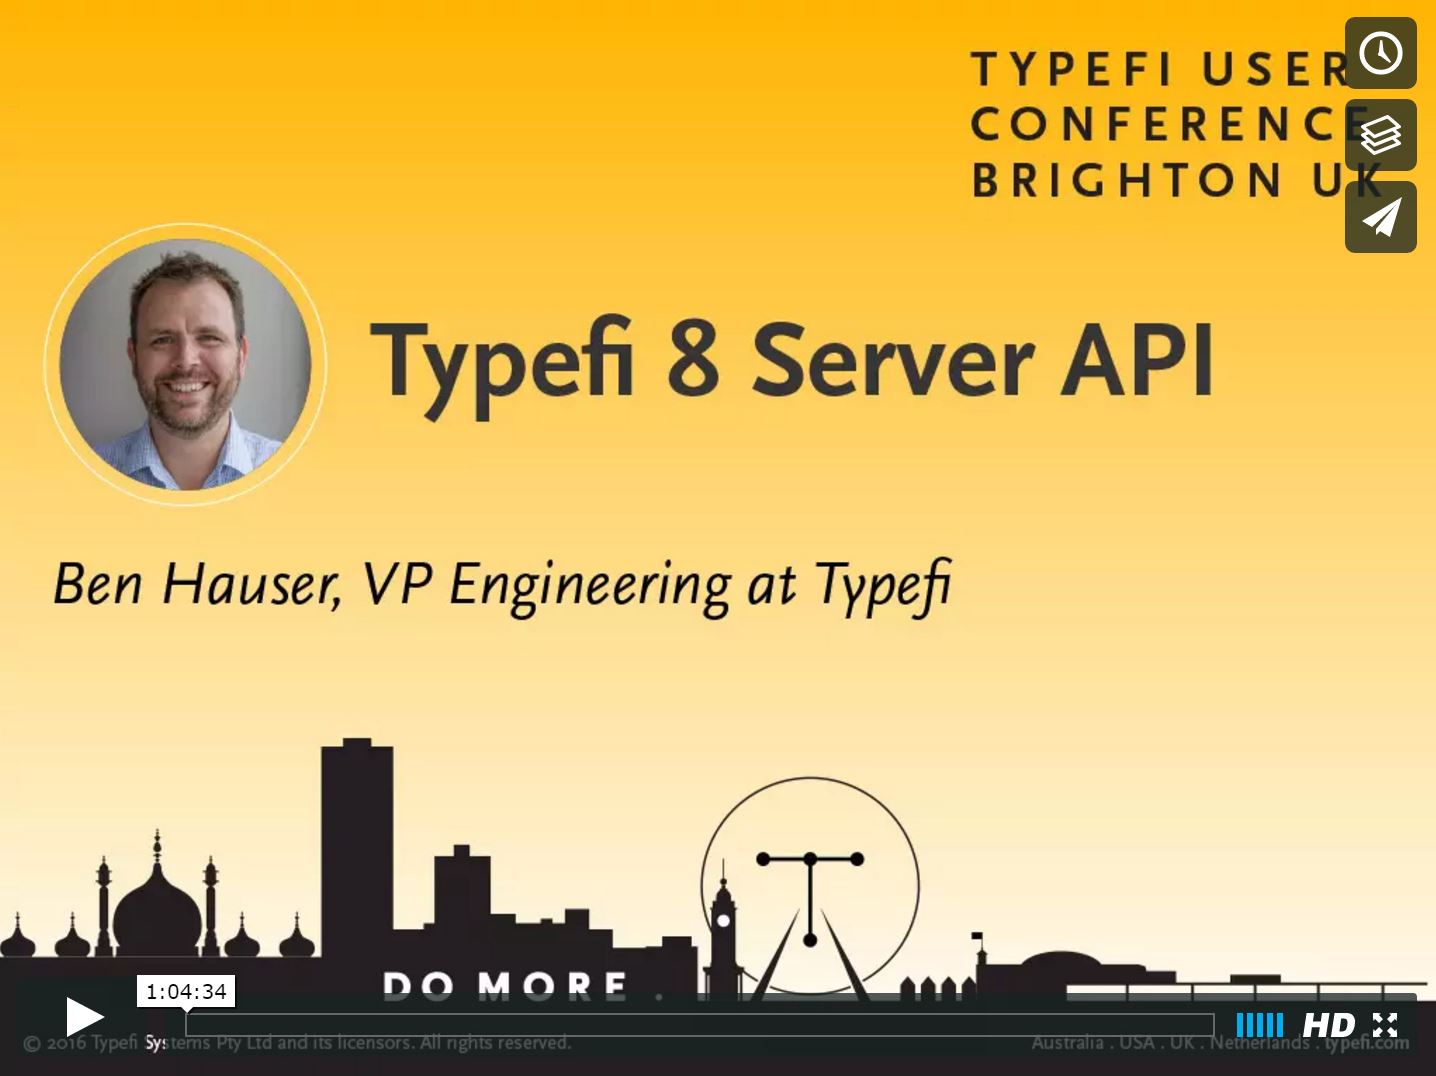 View Ben Hauser's Typefi Server API presentation on Vimeo